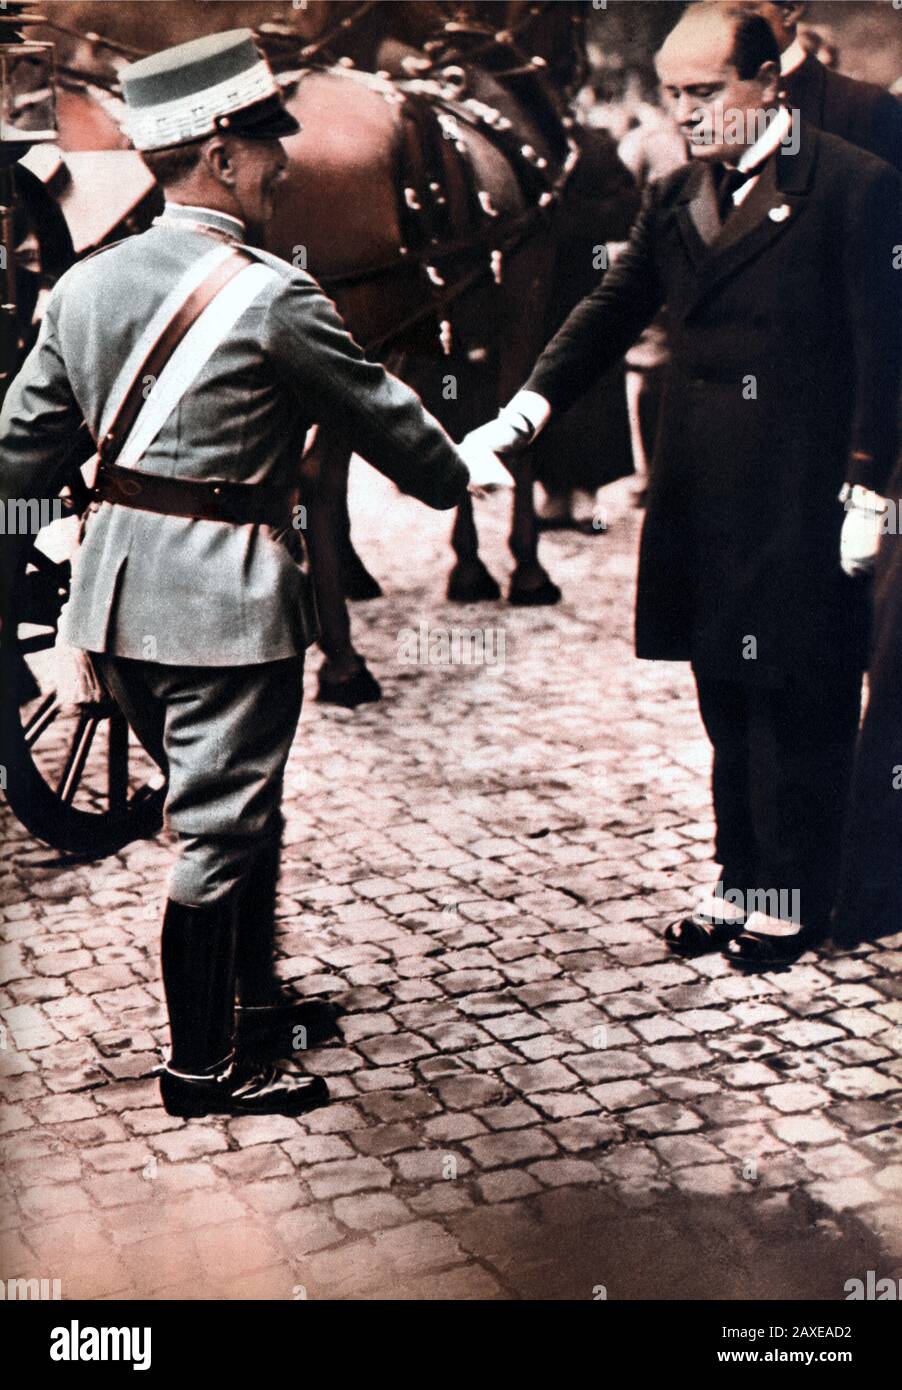 1922 , ROMA , ITALIE : Le fasciste italien Duce BENITO MUSSOLINI ( Predappio, 29 juillet 1883 – Giulino di Mezzegra, 28 avril 1945 ) Rencontrez le roi d'Italie VITTORIO EMANUELE III di SAVOIA juste après la MARCIA SU ROMA - portrait - POLITICA - POLISO - ITALIA - POLITIC - portrait - ITALIE - FASSISMO - FASCISME - FASSISTA - ITALIA -- Archivio GBB Banque D'Images